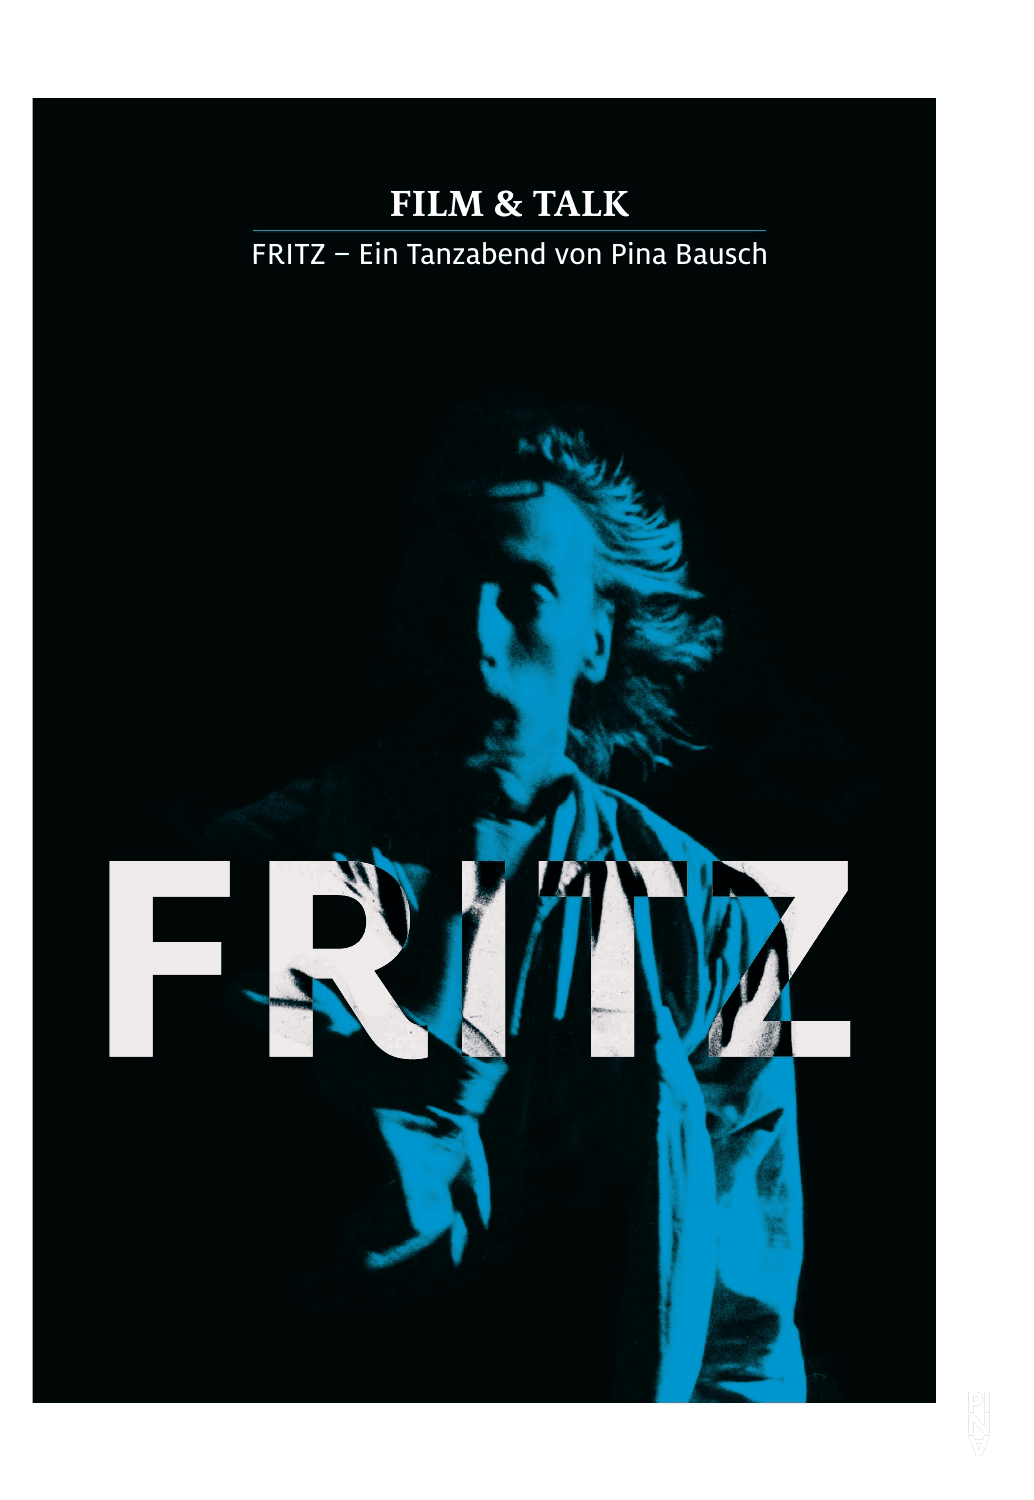 Programme for Fritz – Ein Tanzabend von Pina Bausch, Film & Talk, 30th of april 2015